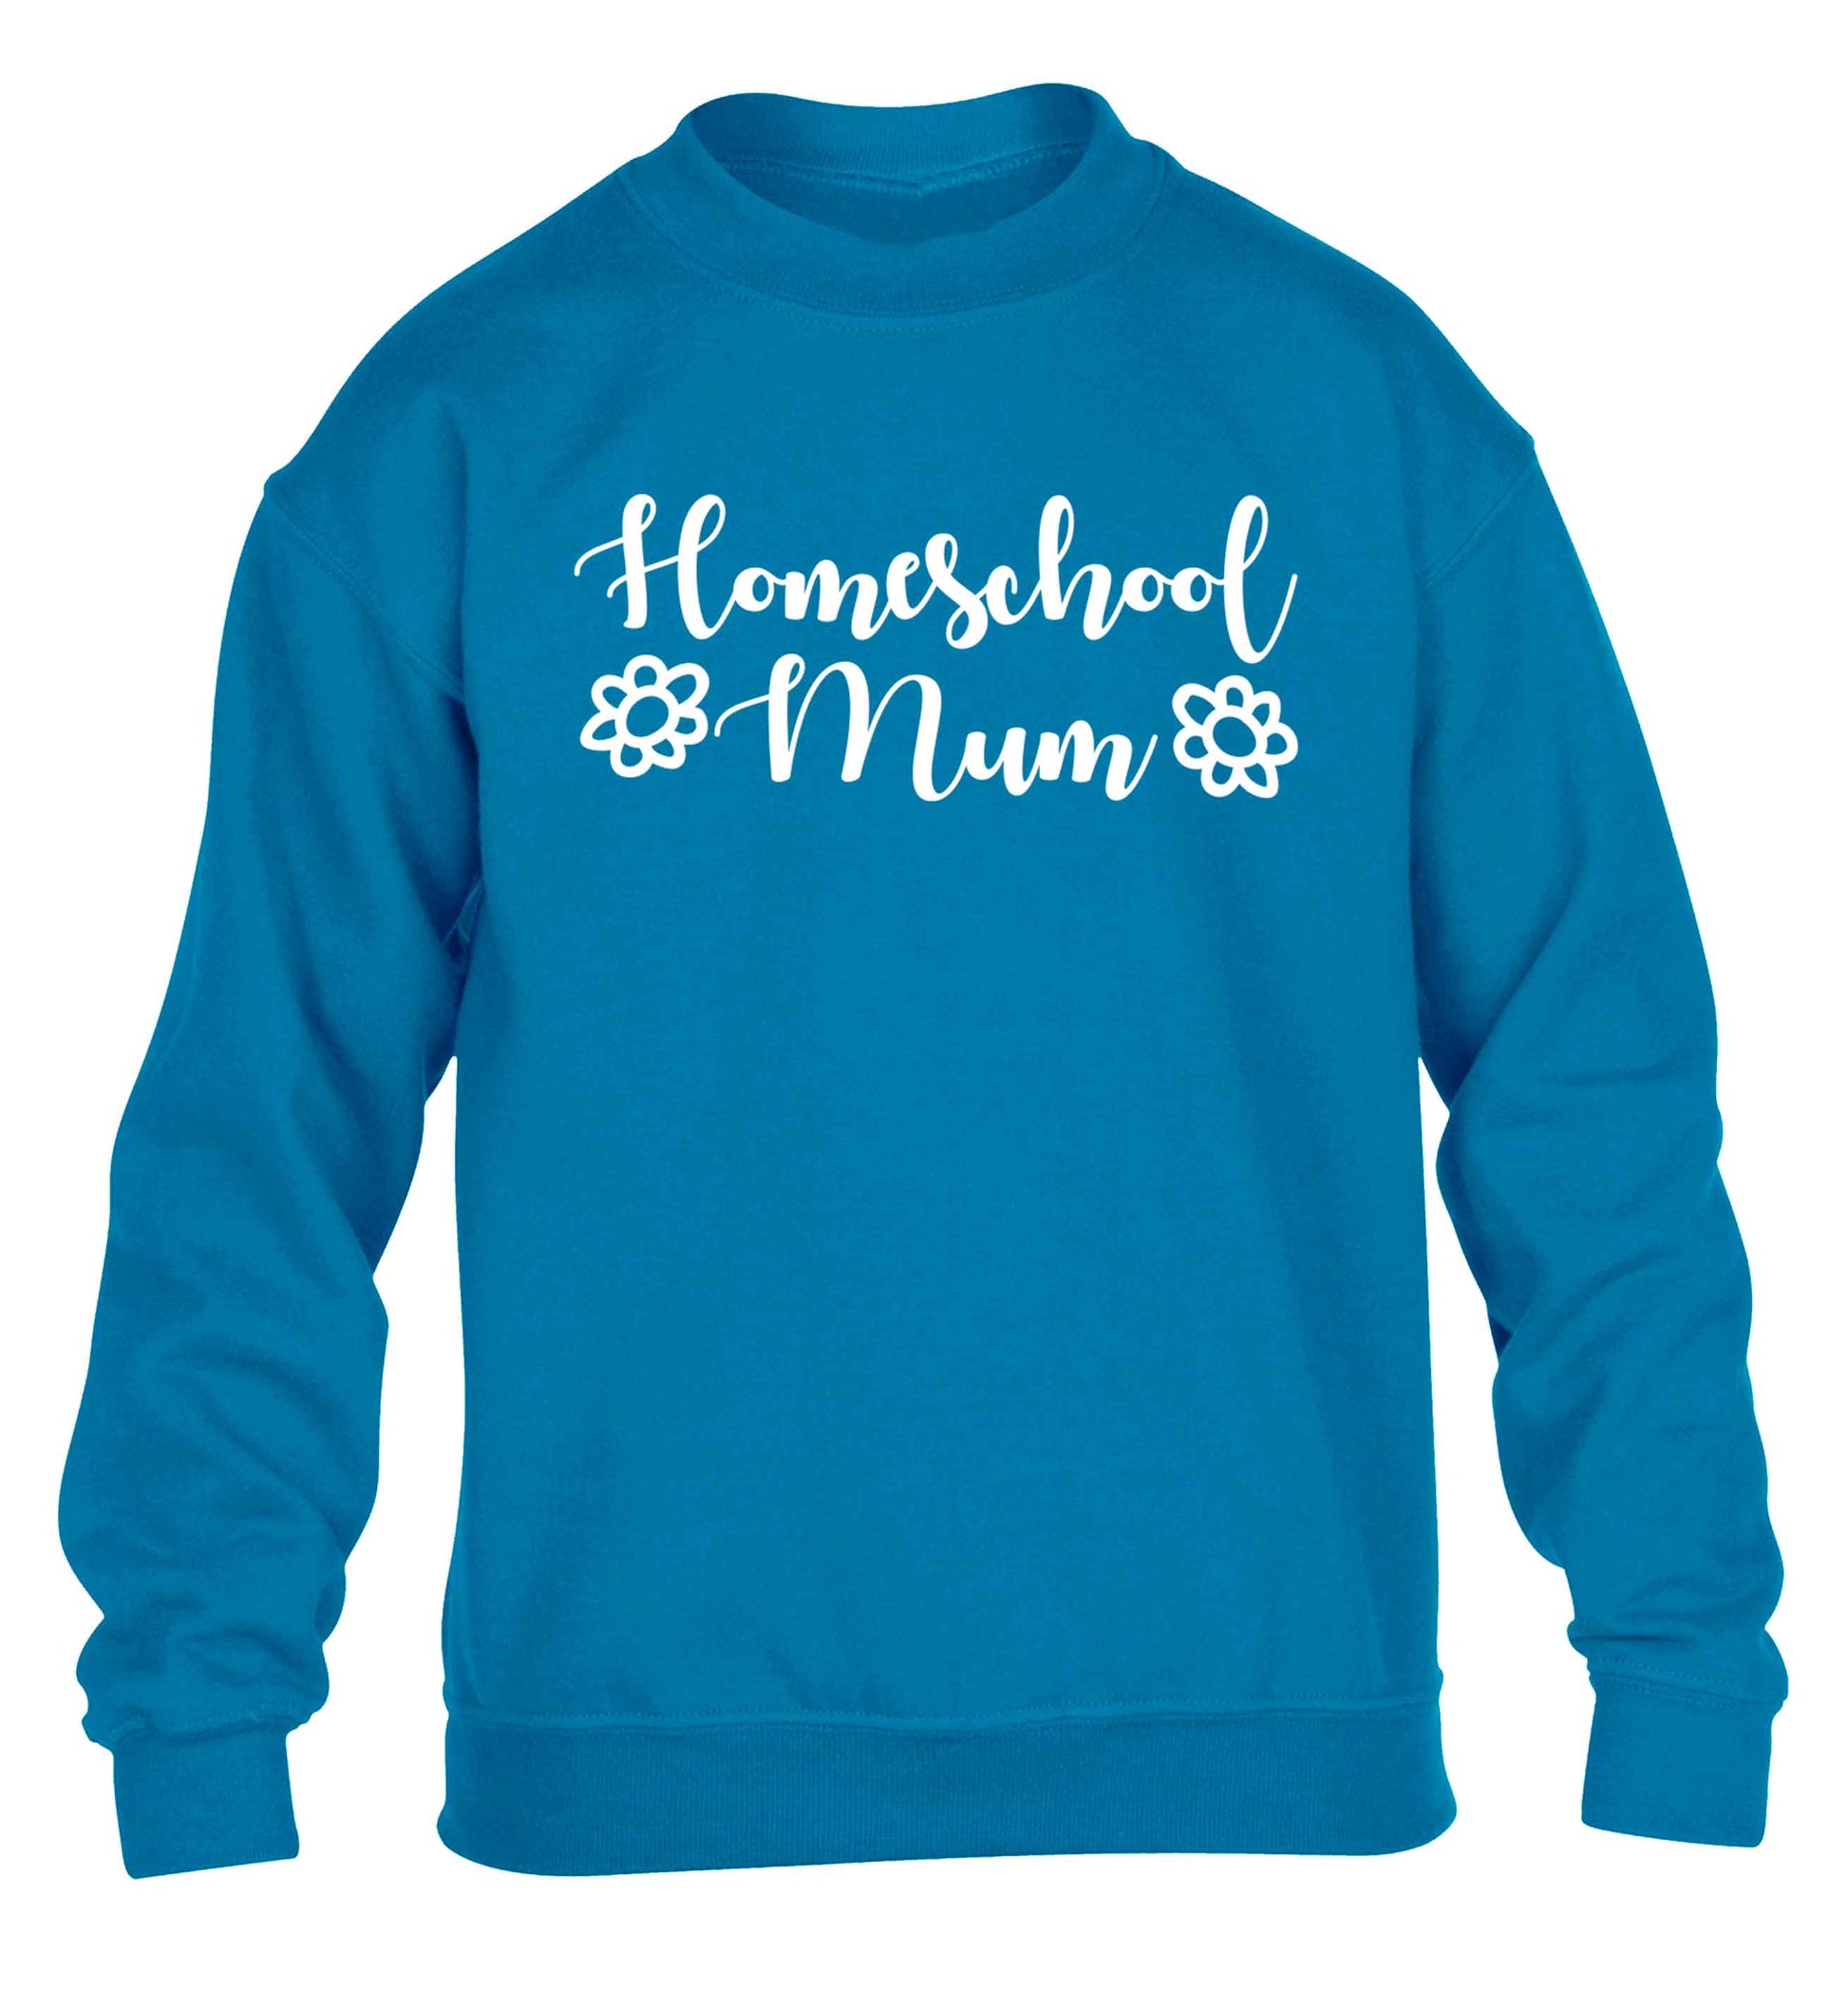 Homeschool mum children's blue sweater 12-13 Years